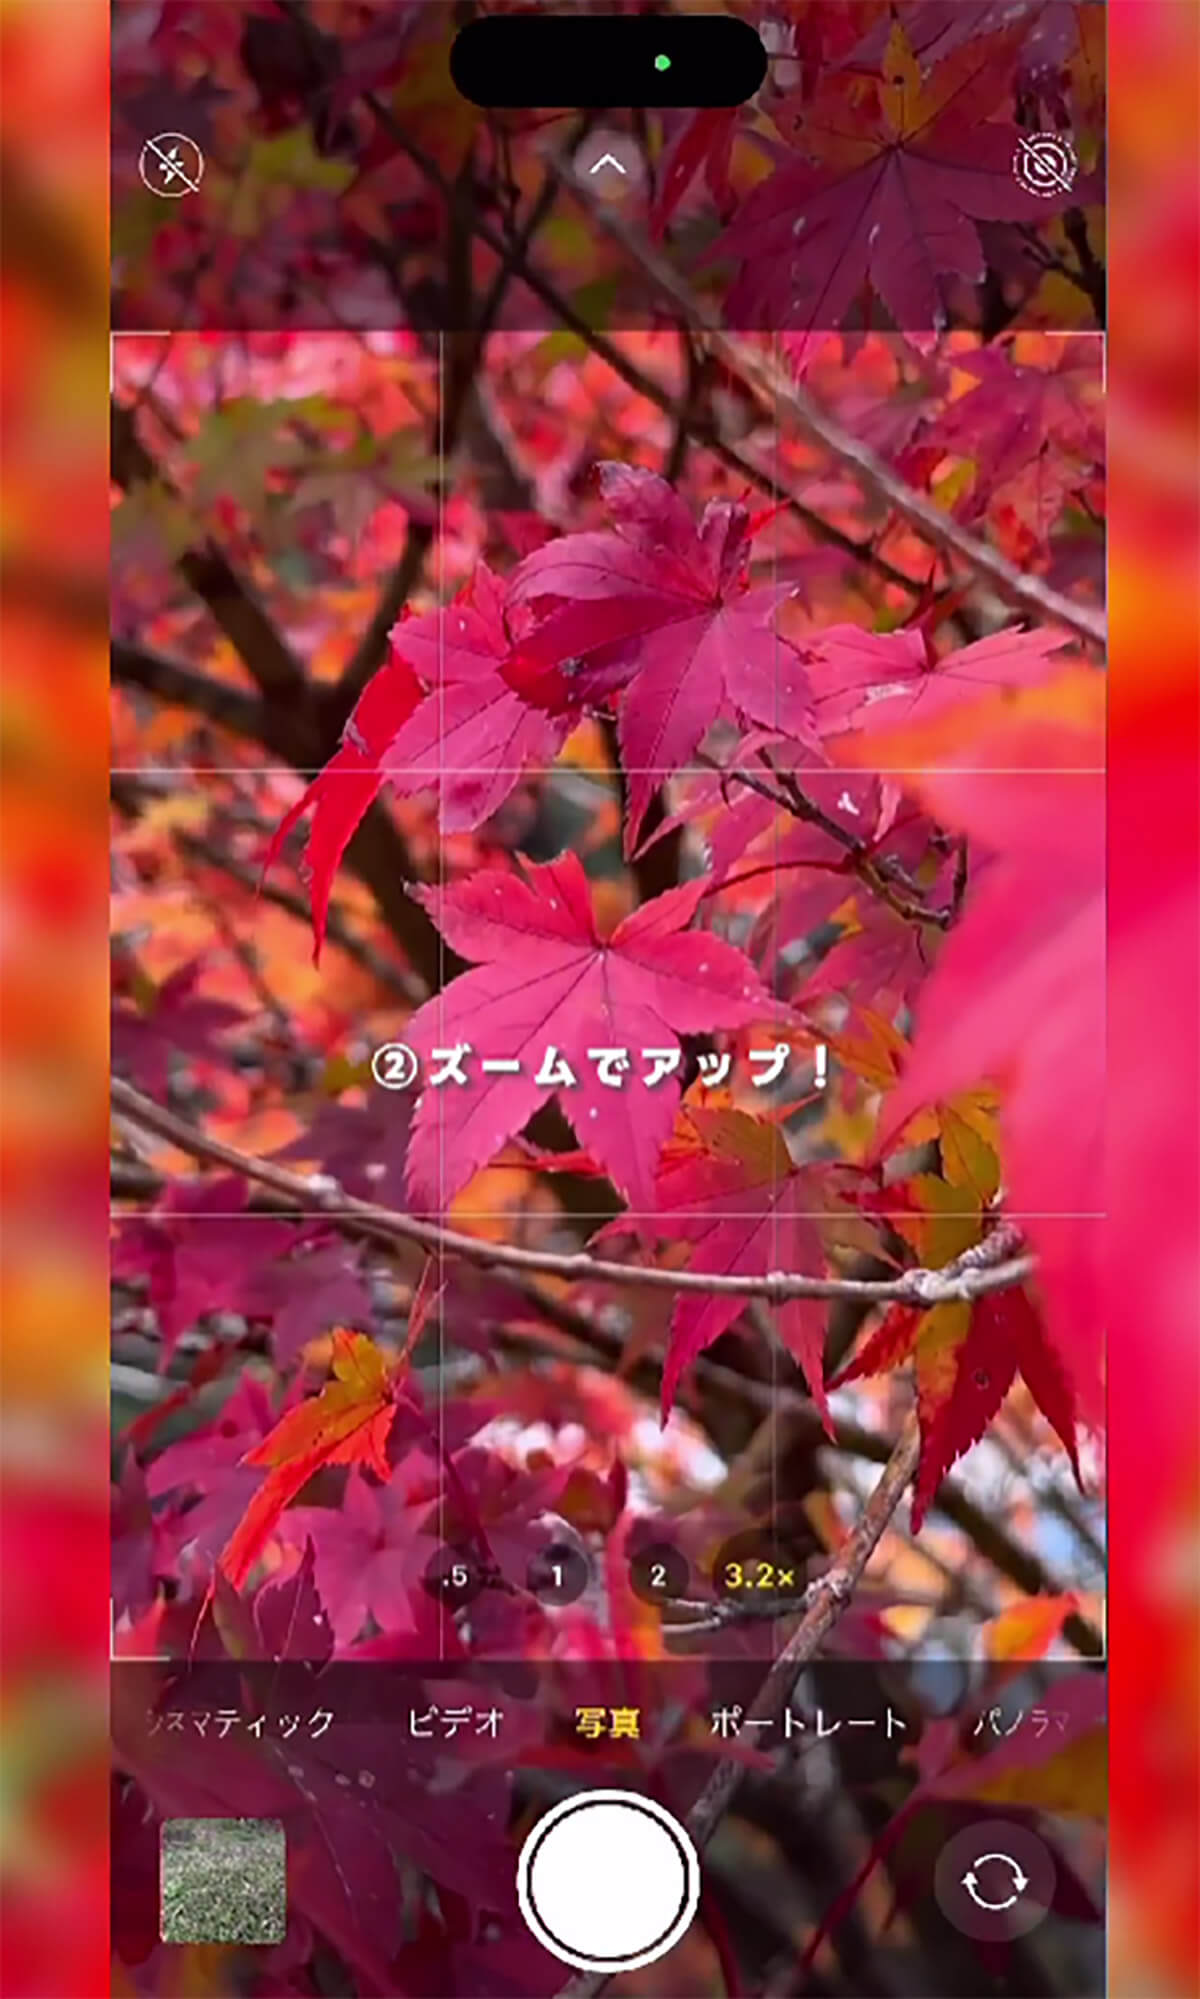  iPhoneのカメラで紅葉を綺麗に撮影する方法2